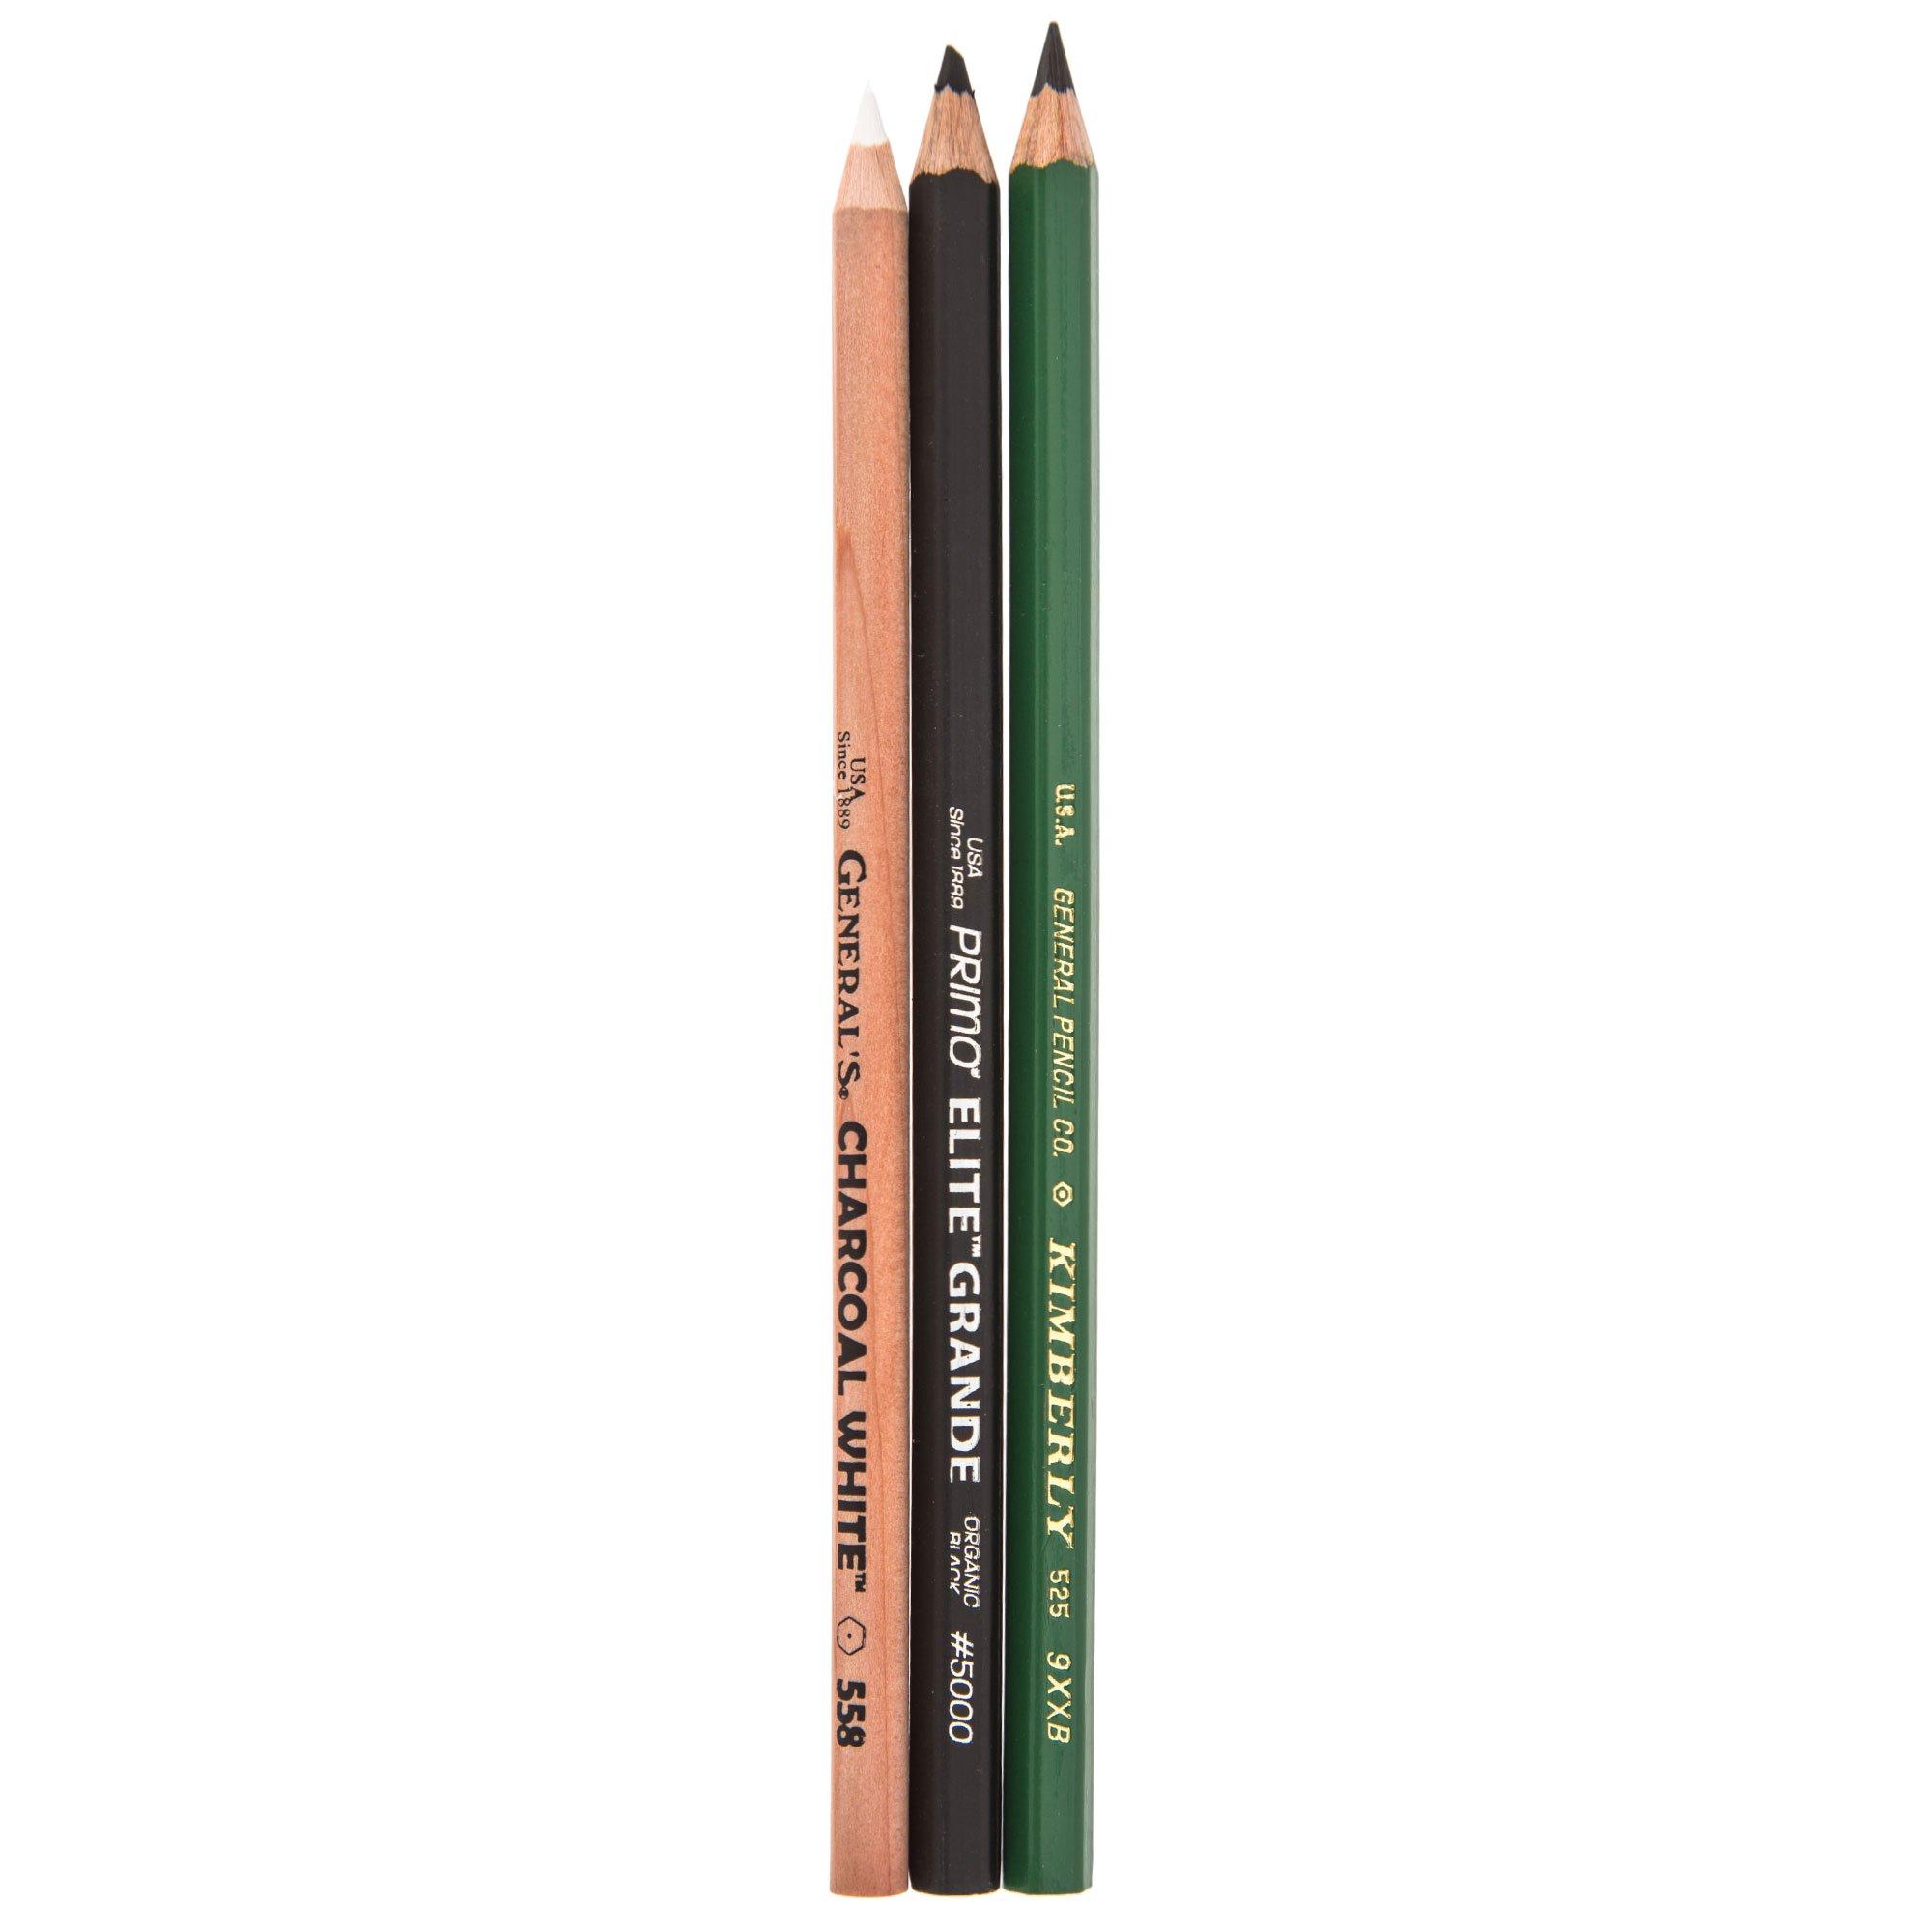 Generals Charcoal Pencils 12 Box - No 558 - White